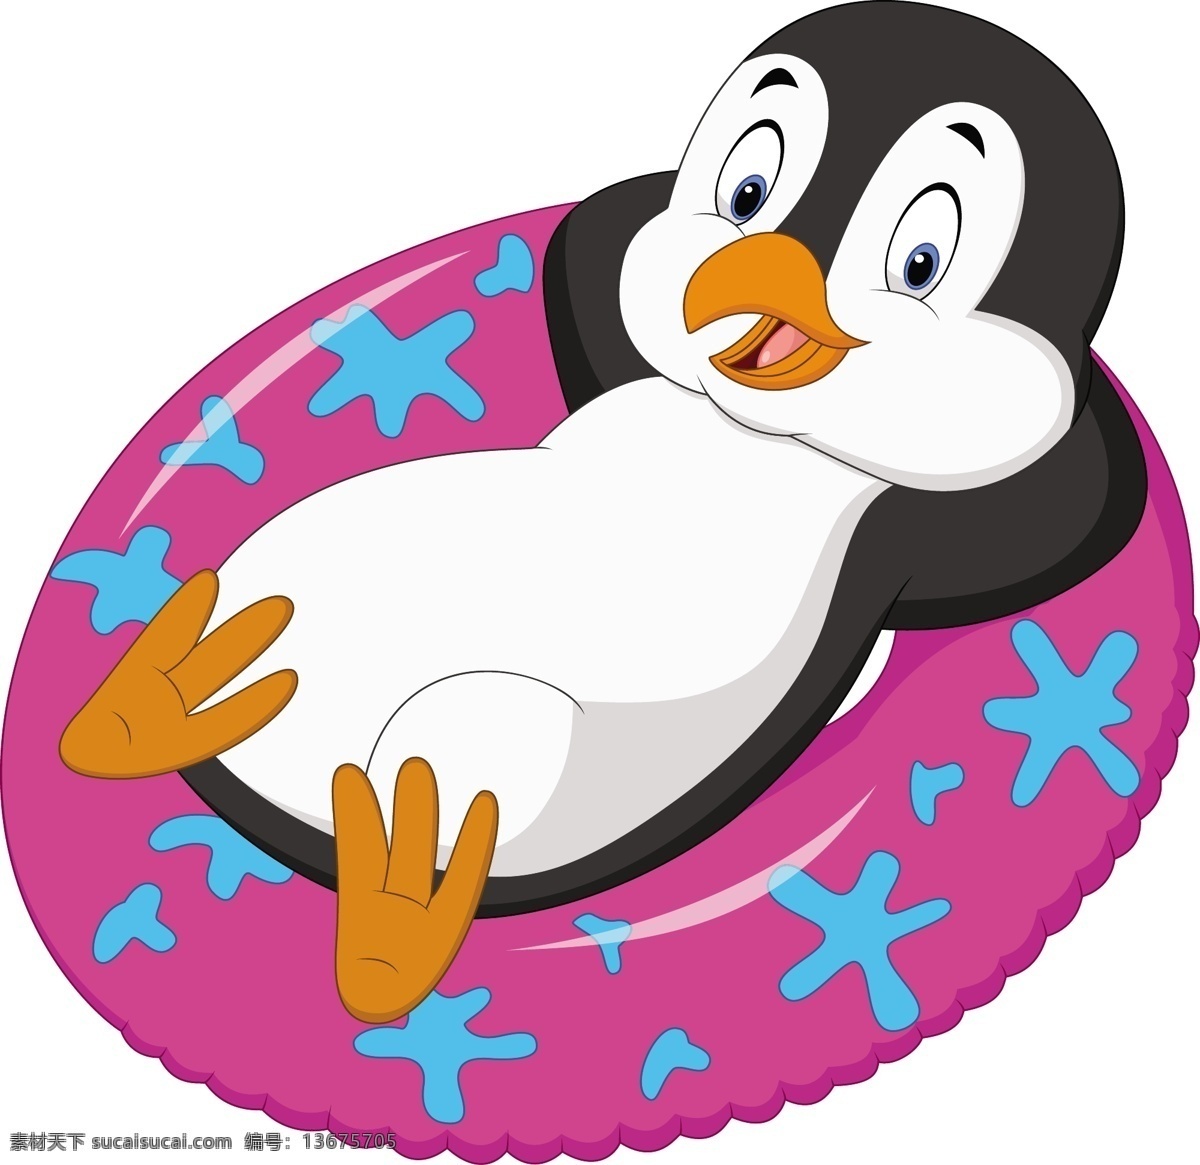 卡通企鹅 企鹅 卡通动物 可爱 卡通 动物 幼儿园素材 动物素材 夏天企鹅 卡通设计